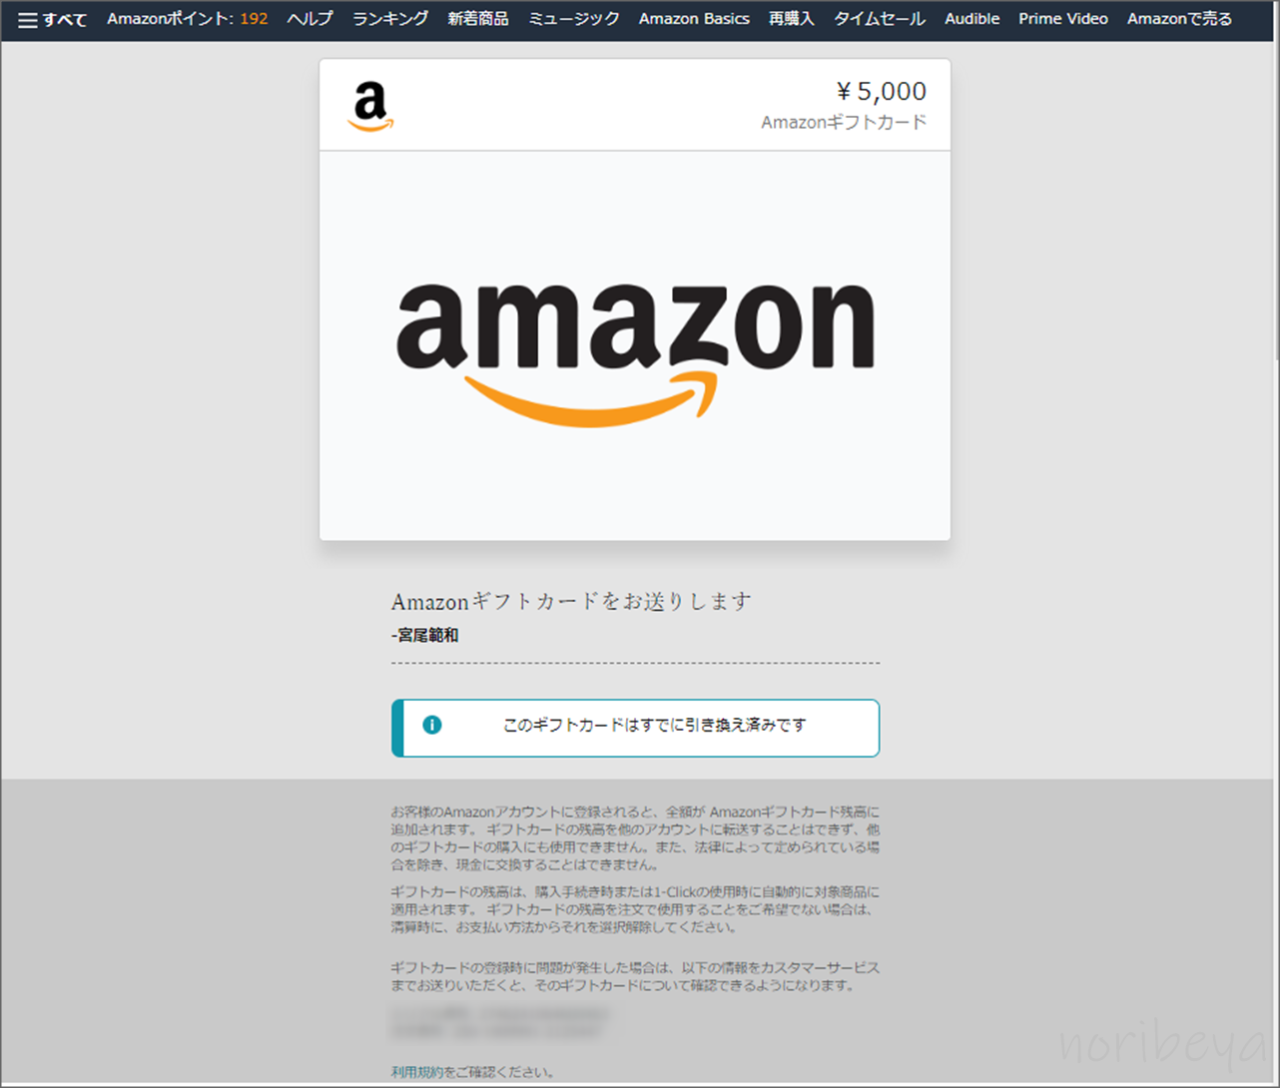 アマギフをLINEで送るために「AmazonギフトカードのURLをコピーしてLINEで送る」【Amazonギフトカードをラインでプレゼント】